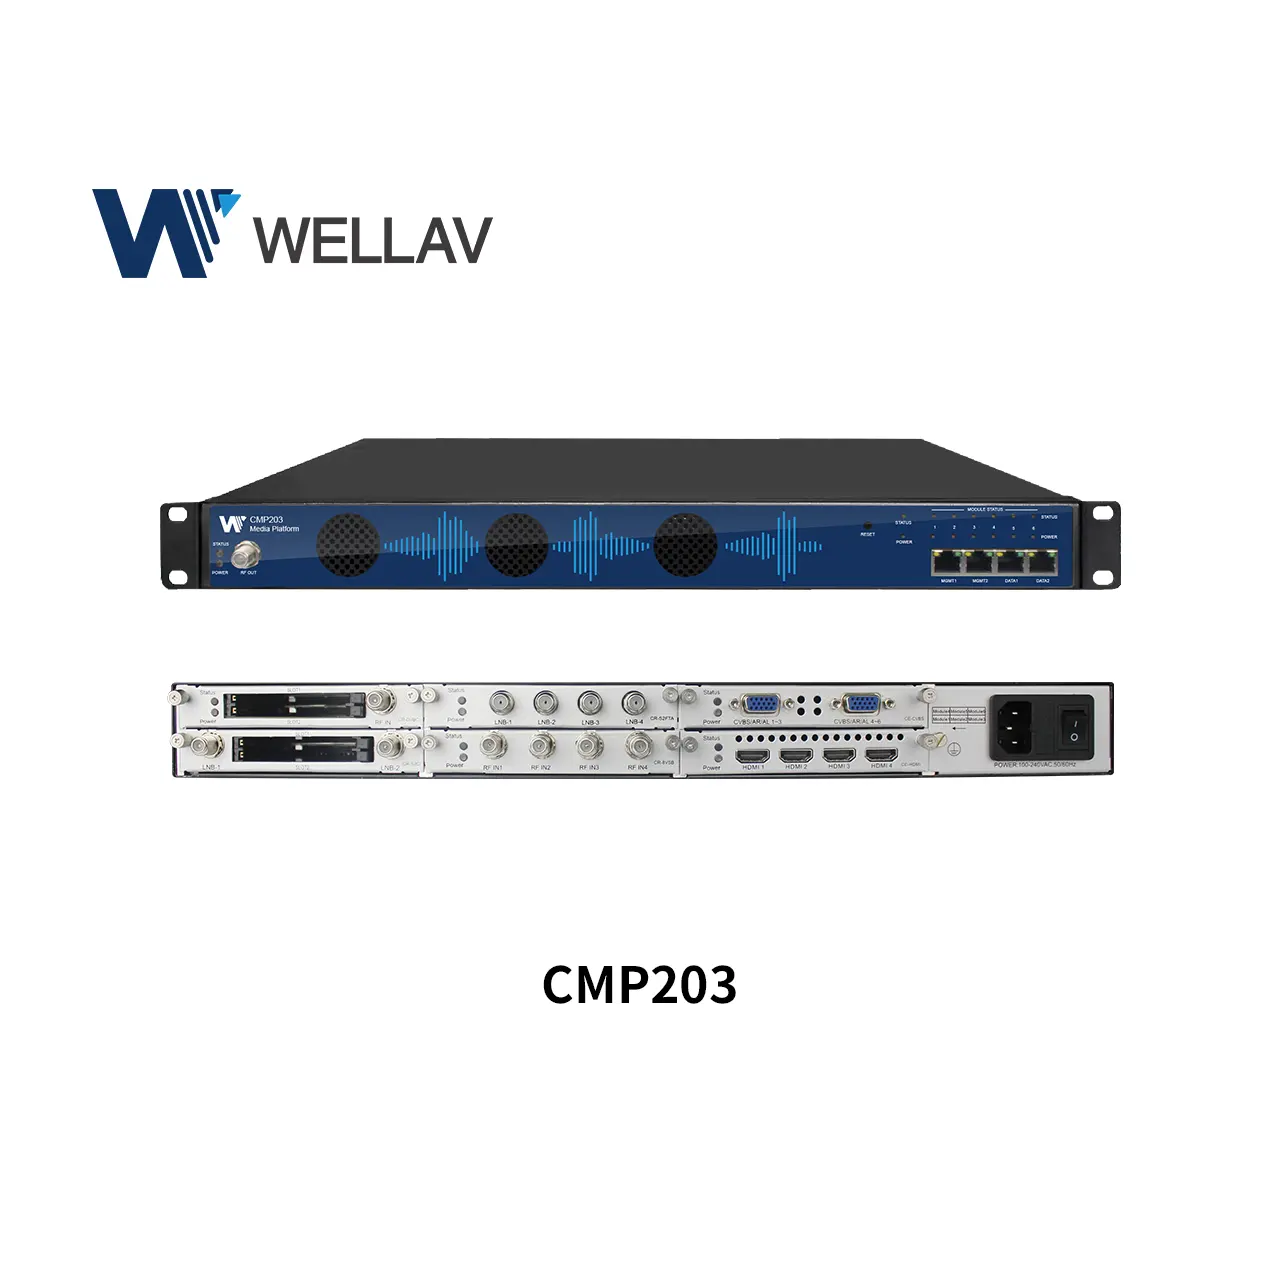 Wellov-modulador de receptor FCC DVB-C/DVB-S2 FTA, ISDB-T/QAM/OFDM/ATSC transmodulador CE FCC